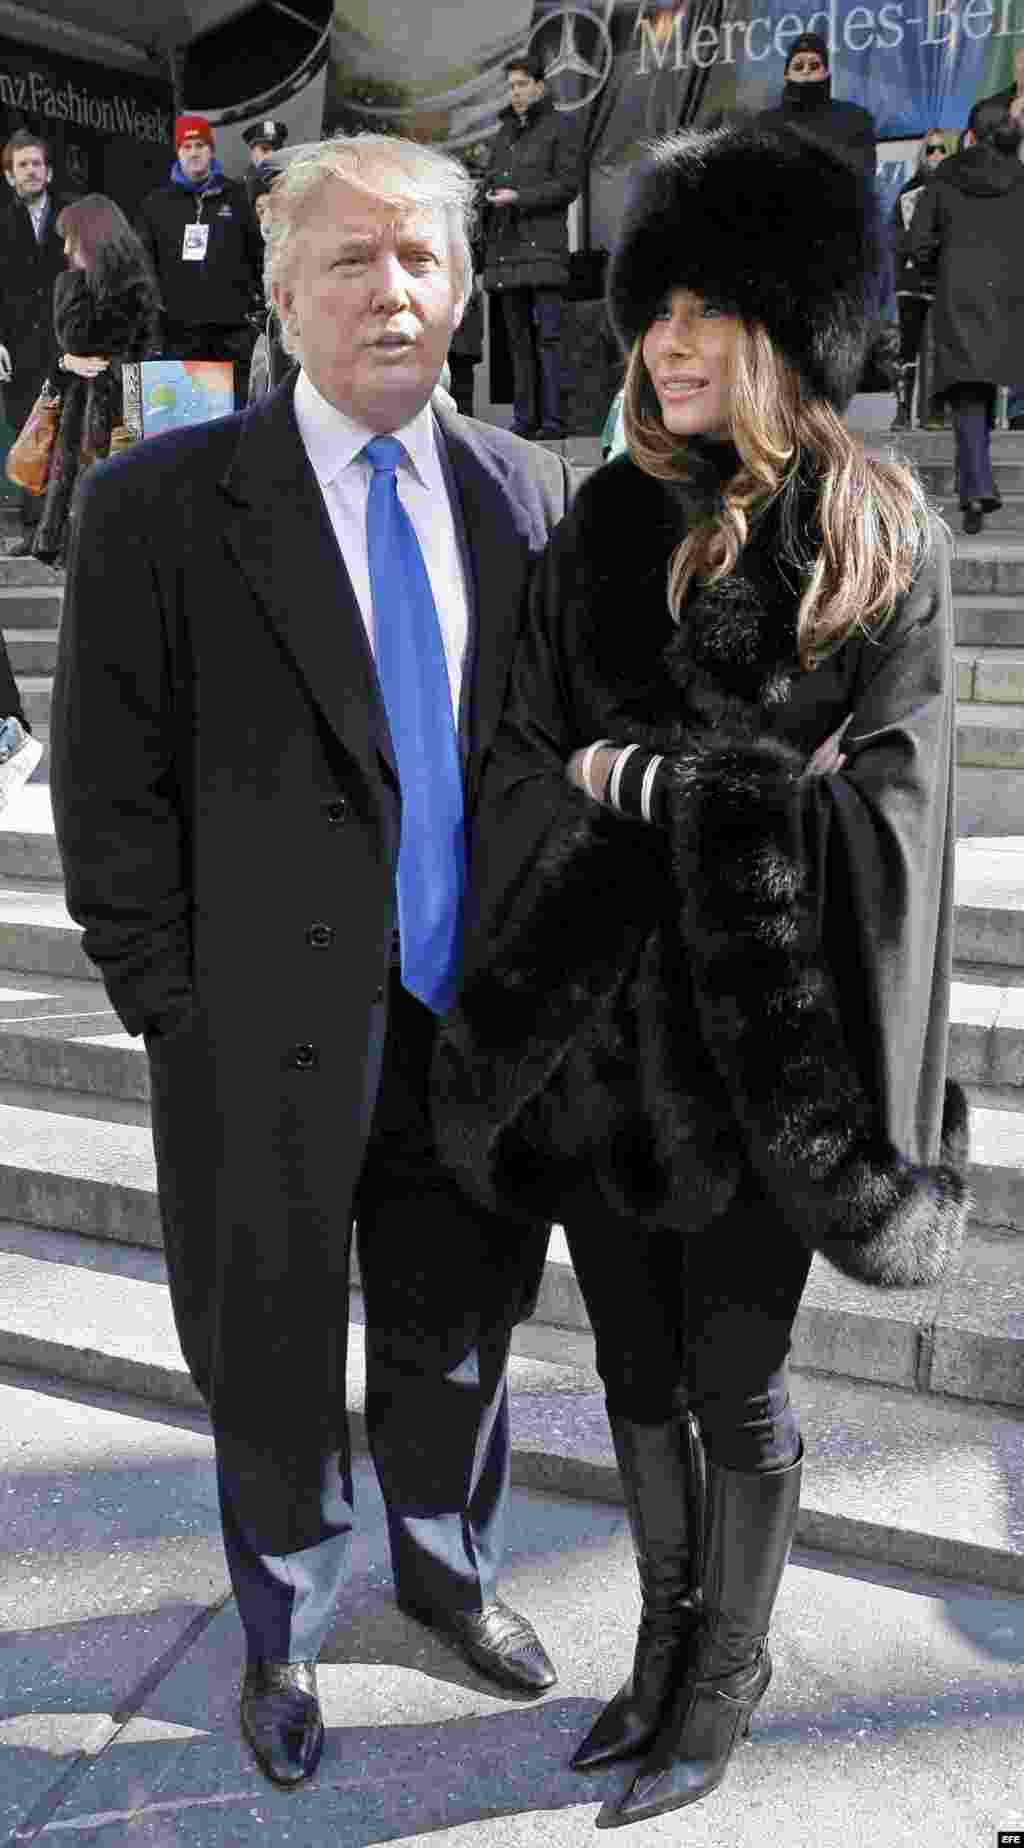 Donald y Melania Trump salen del festival de la moda Michael Kors en la semana Mercedes Benz, en Nueva York, en febrero de 2007.